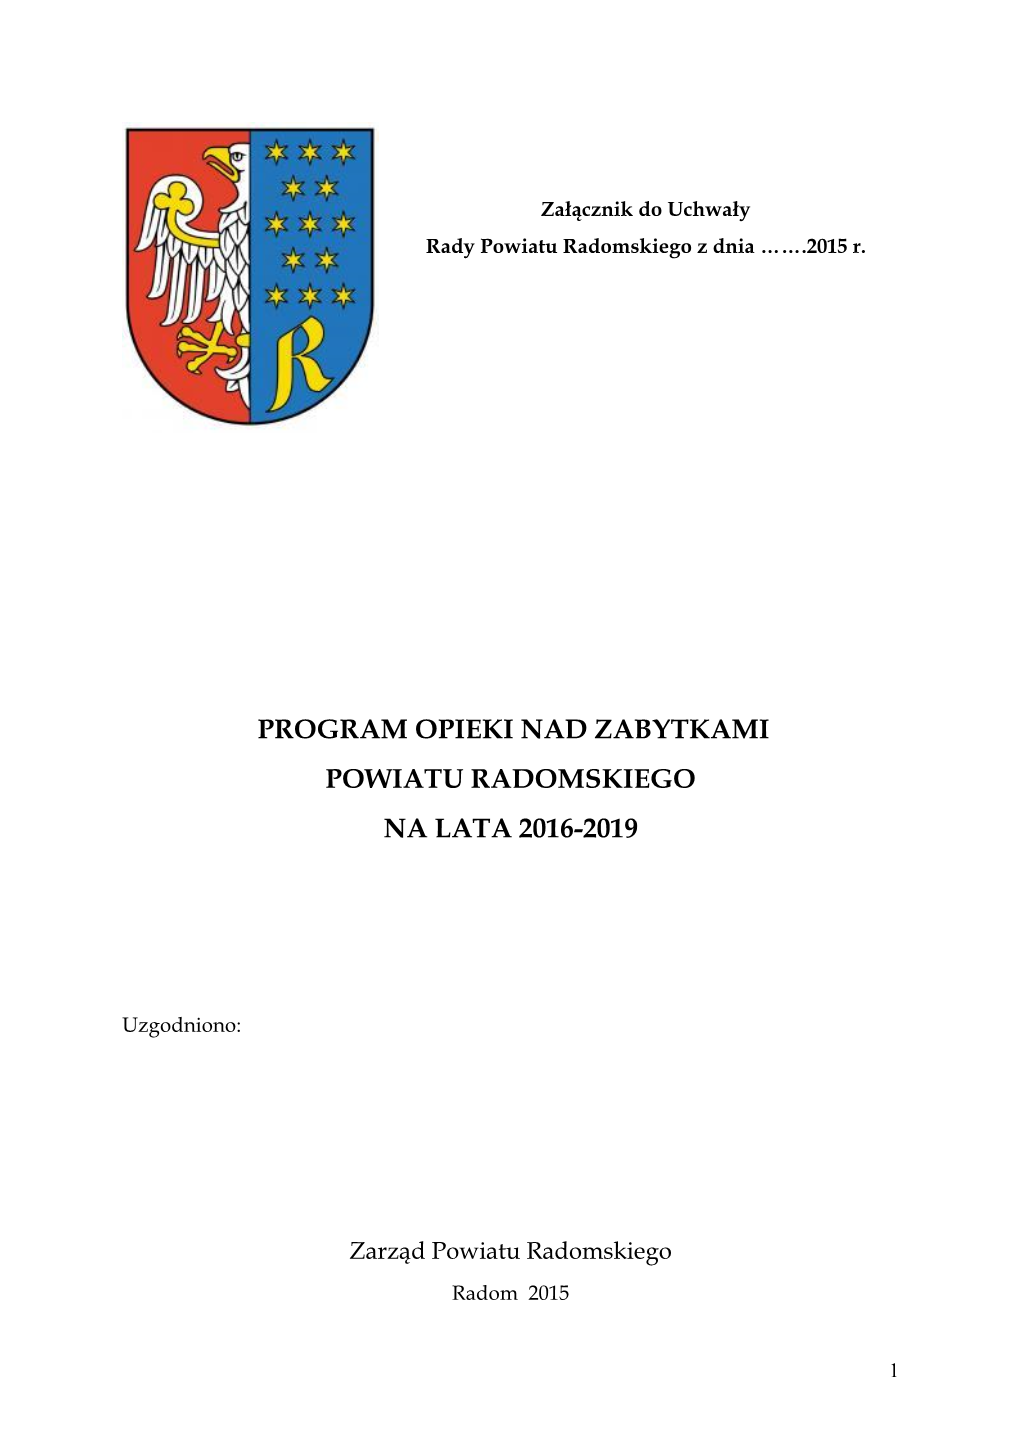 Powiatowy Program Opieki Nad Zabytkami Powiatu Radomskiego Na Lata 2011-2014